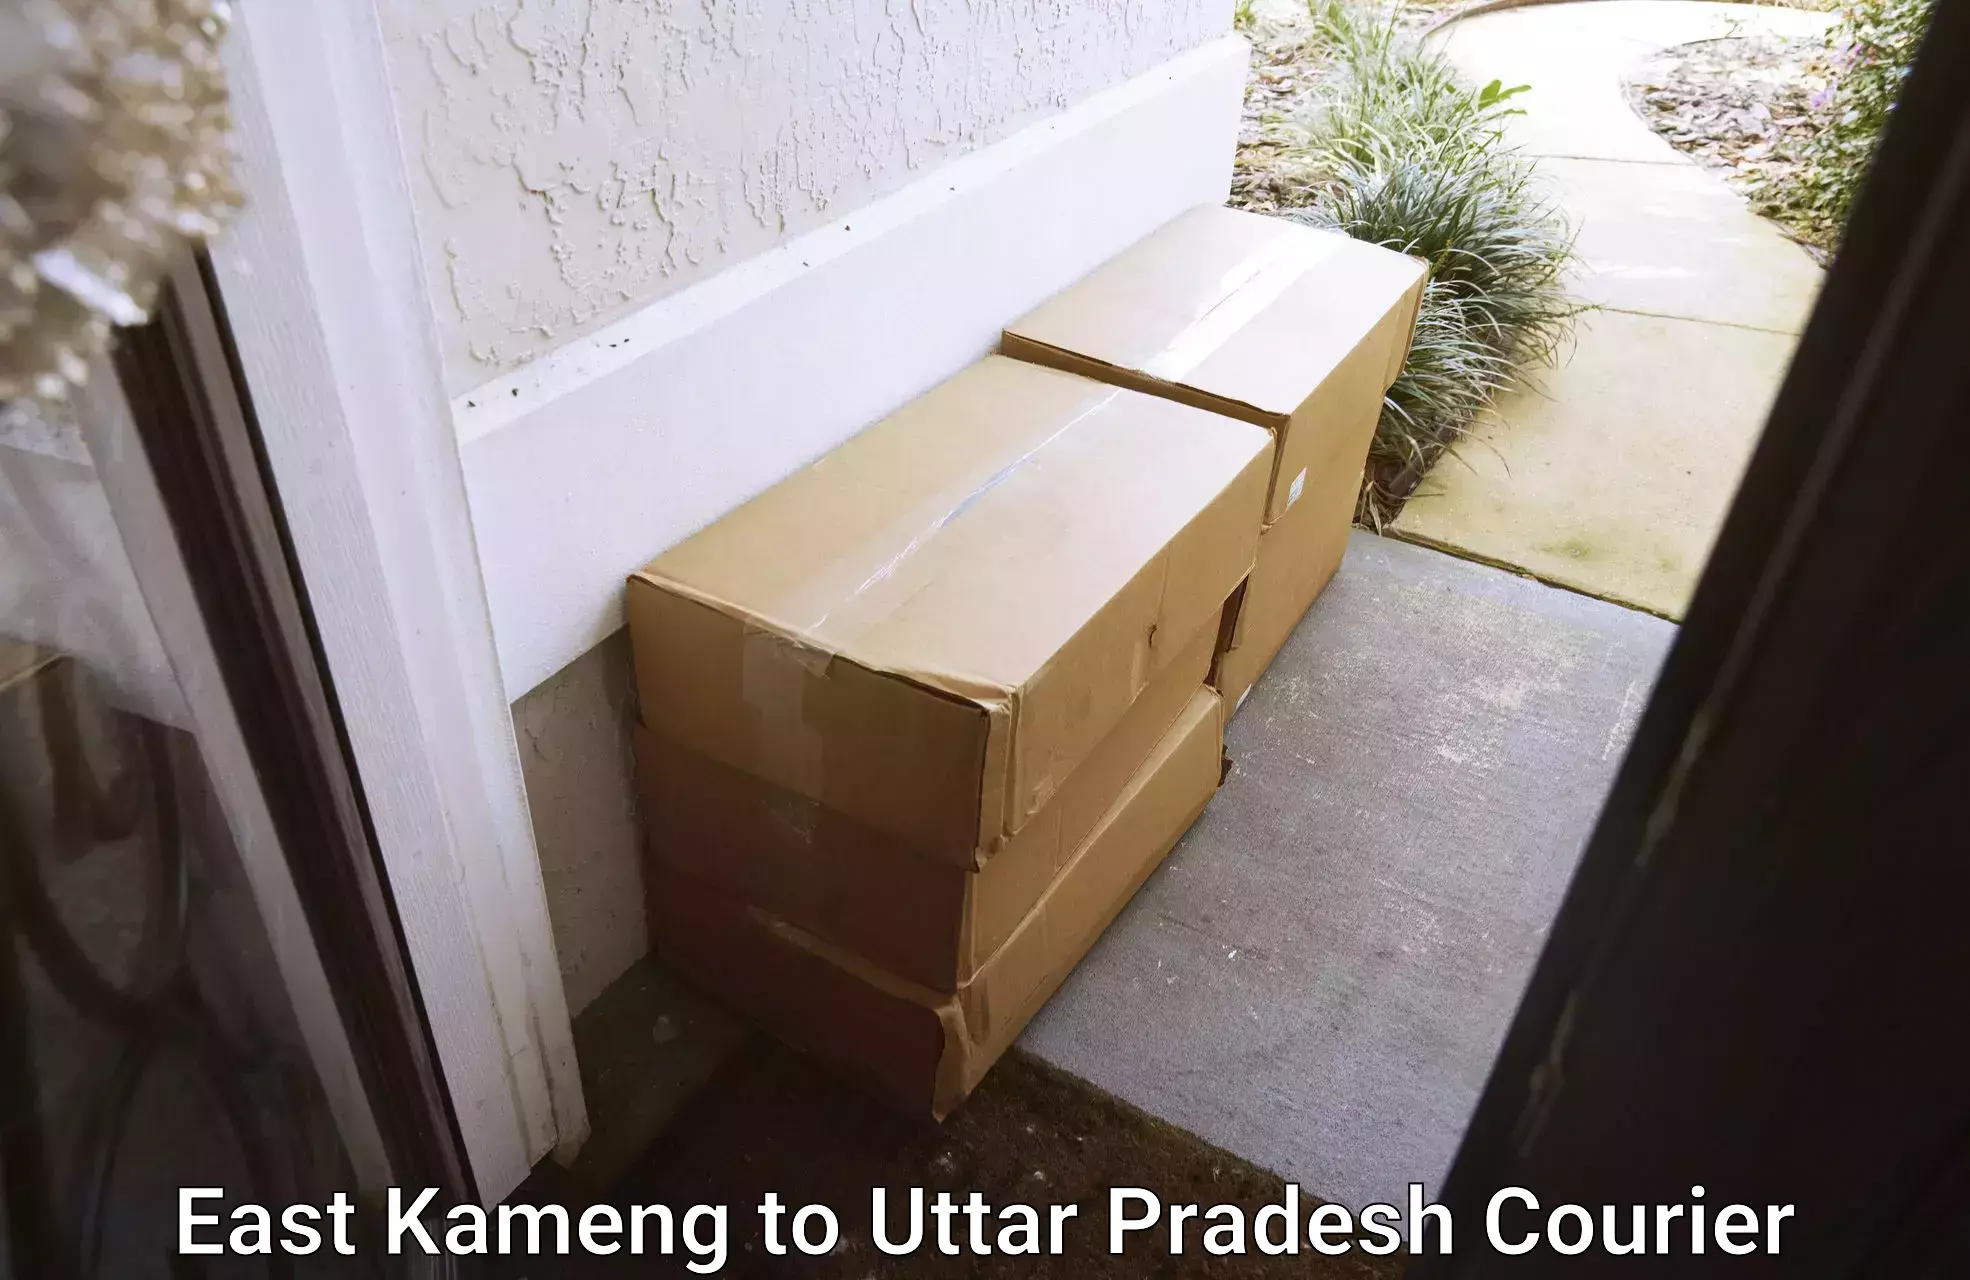 Quick dispatch service East Kameng to Uttar Pradesh